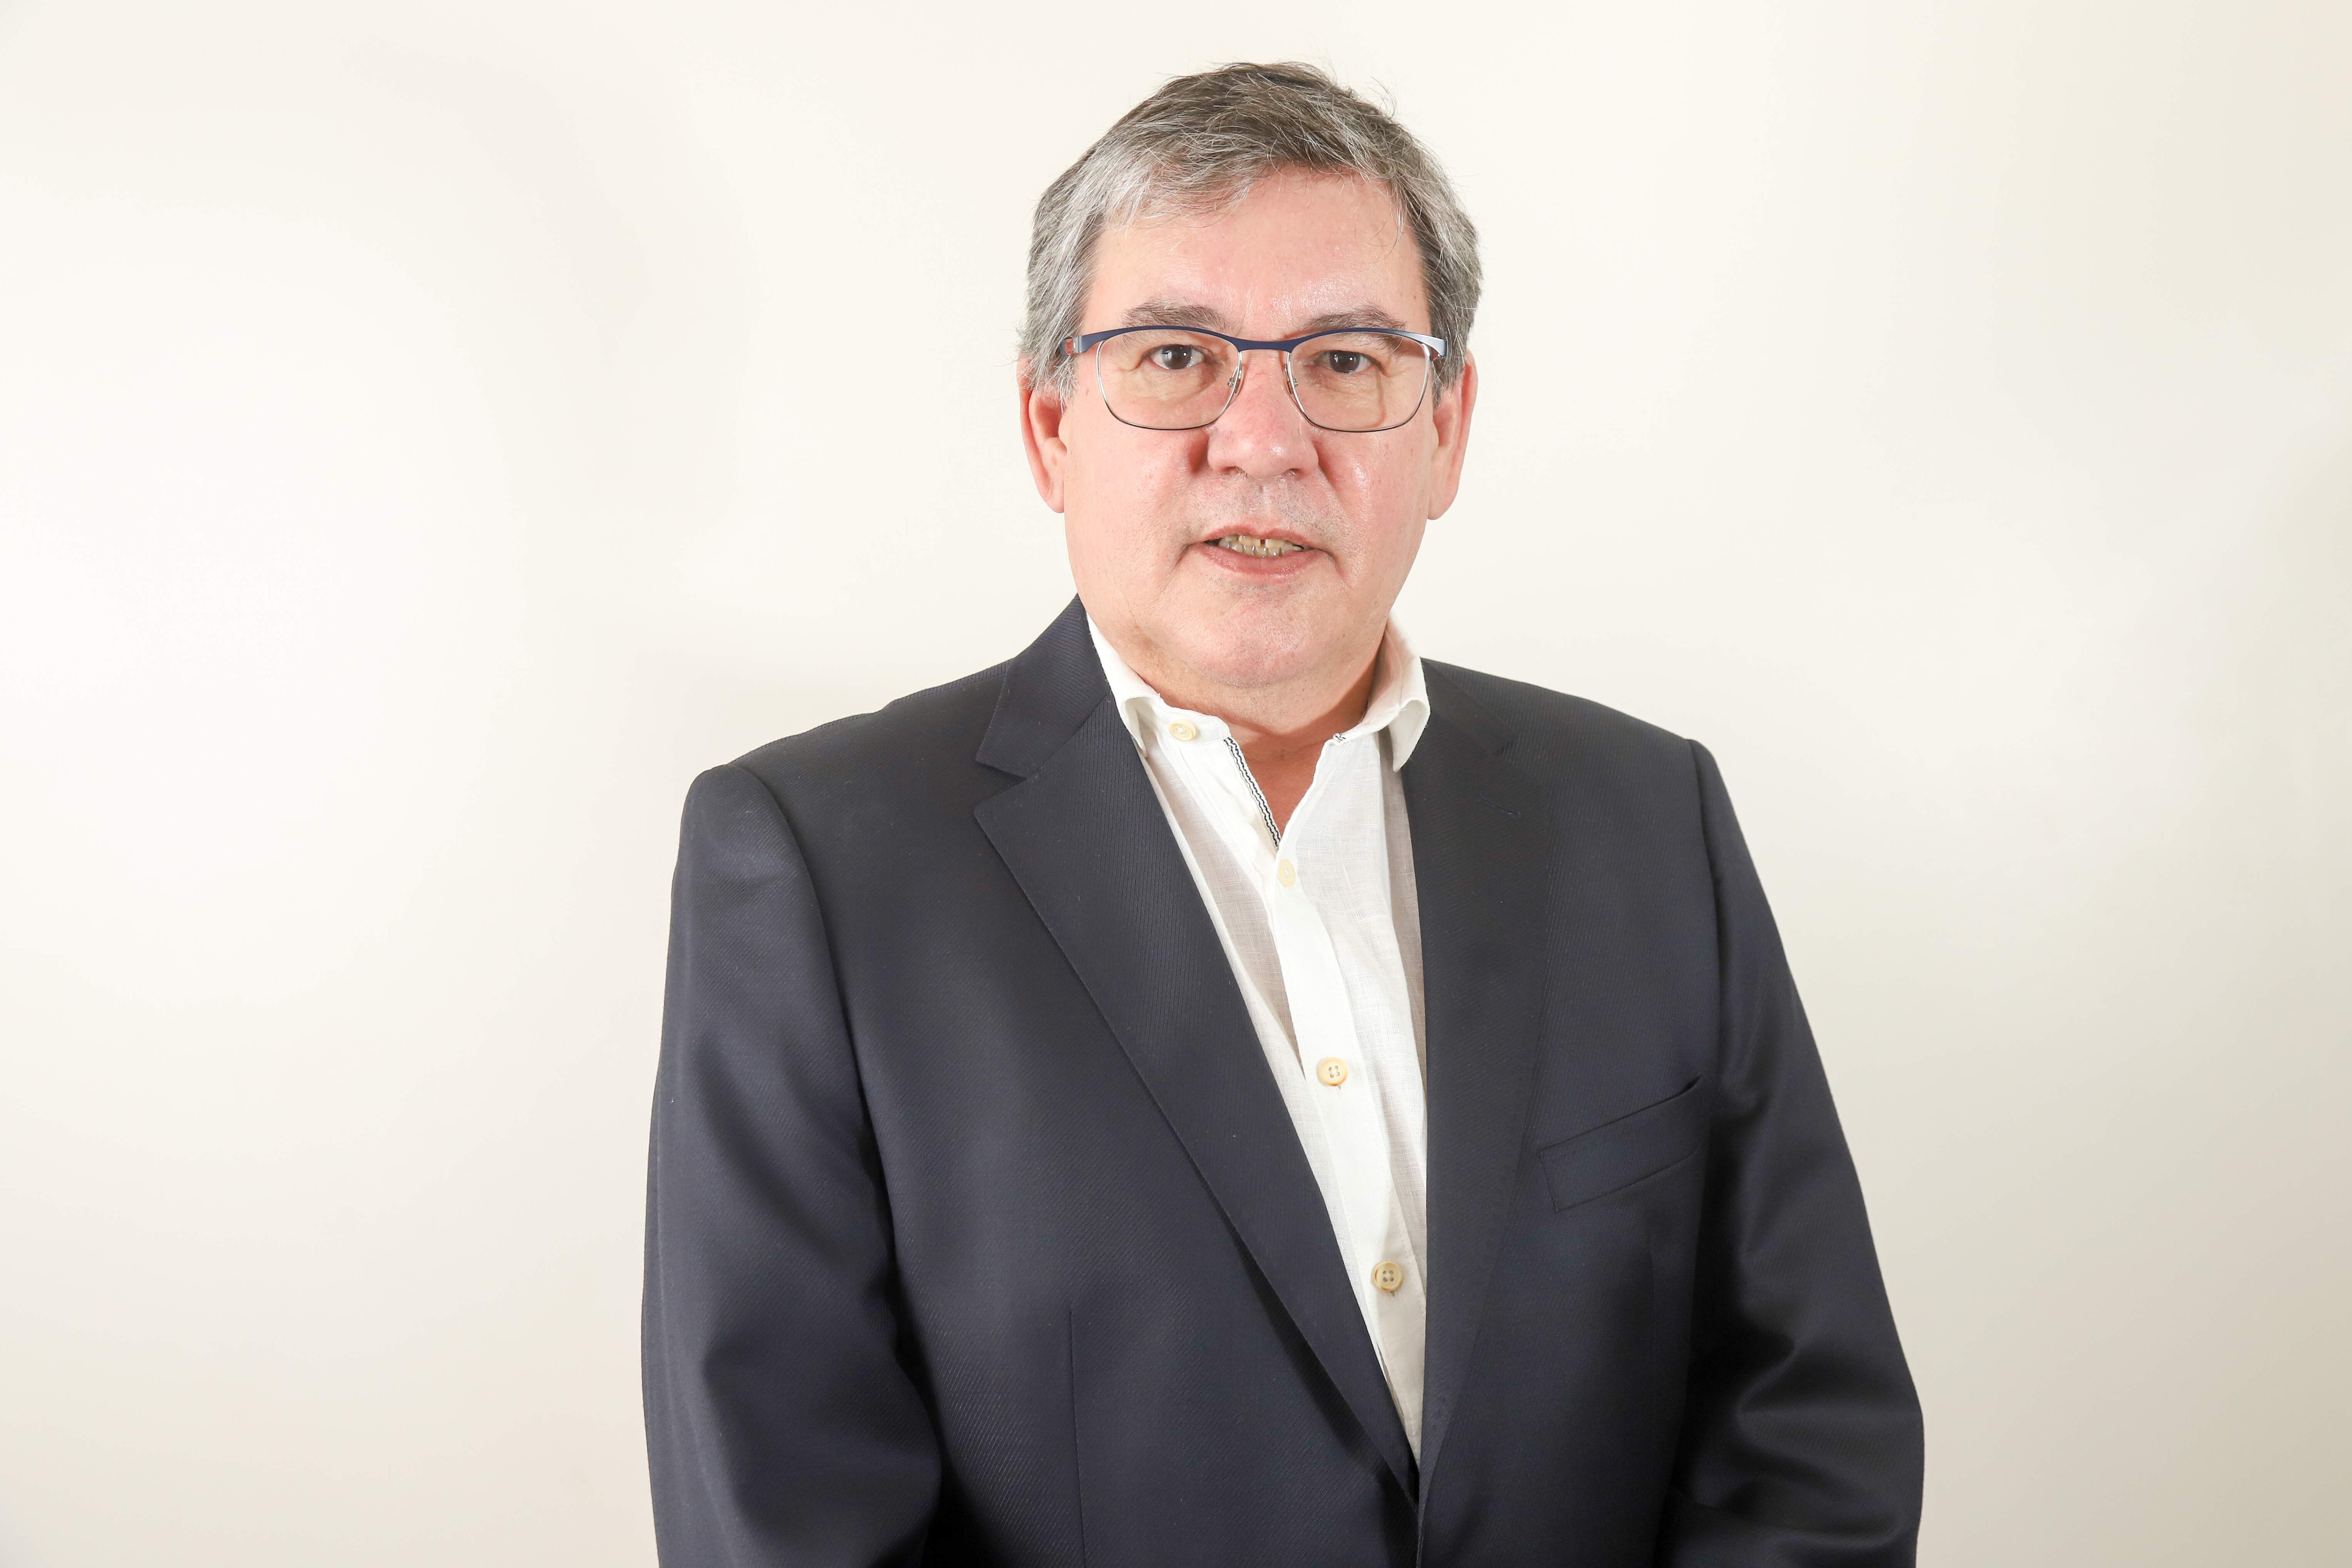 Dr. Marcio Aurélio é o sexto candidato a prefeito de Santos entrevistado por A Tribuna